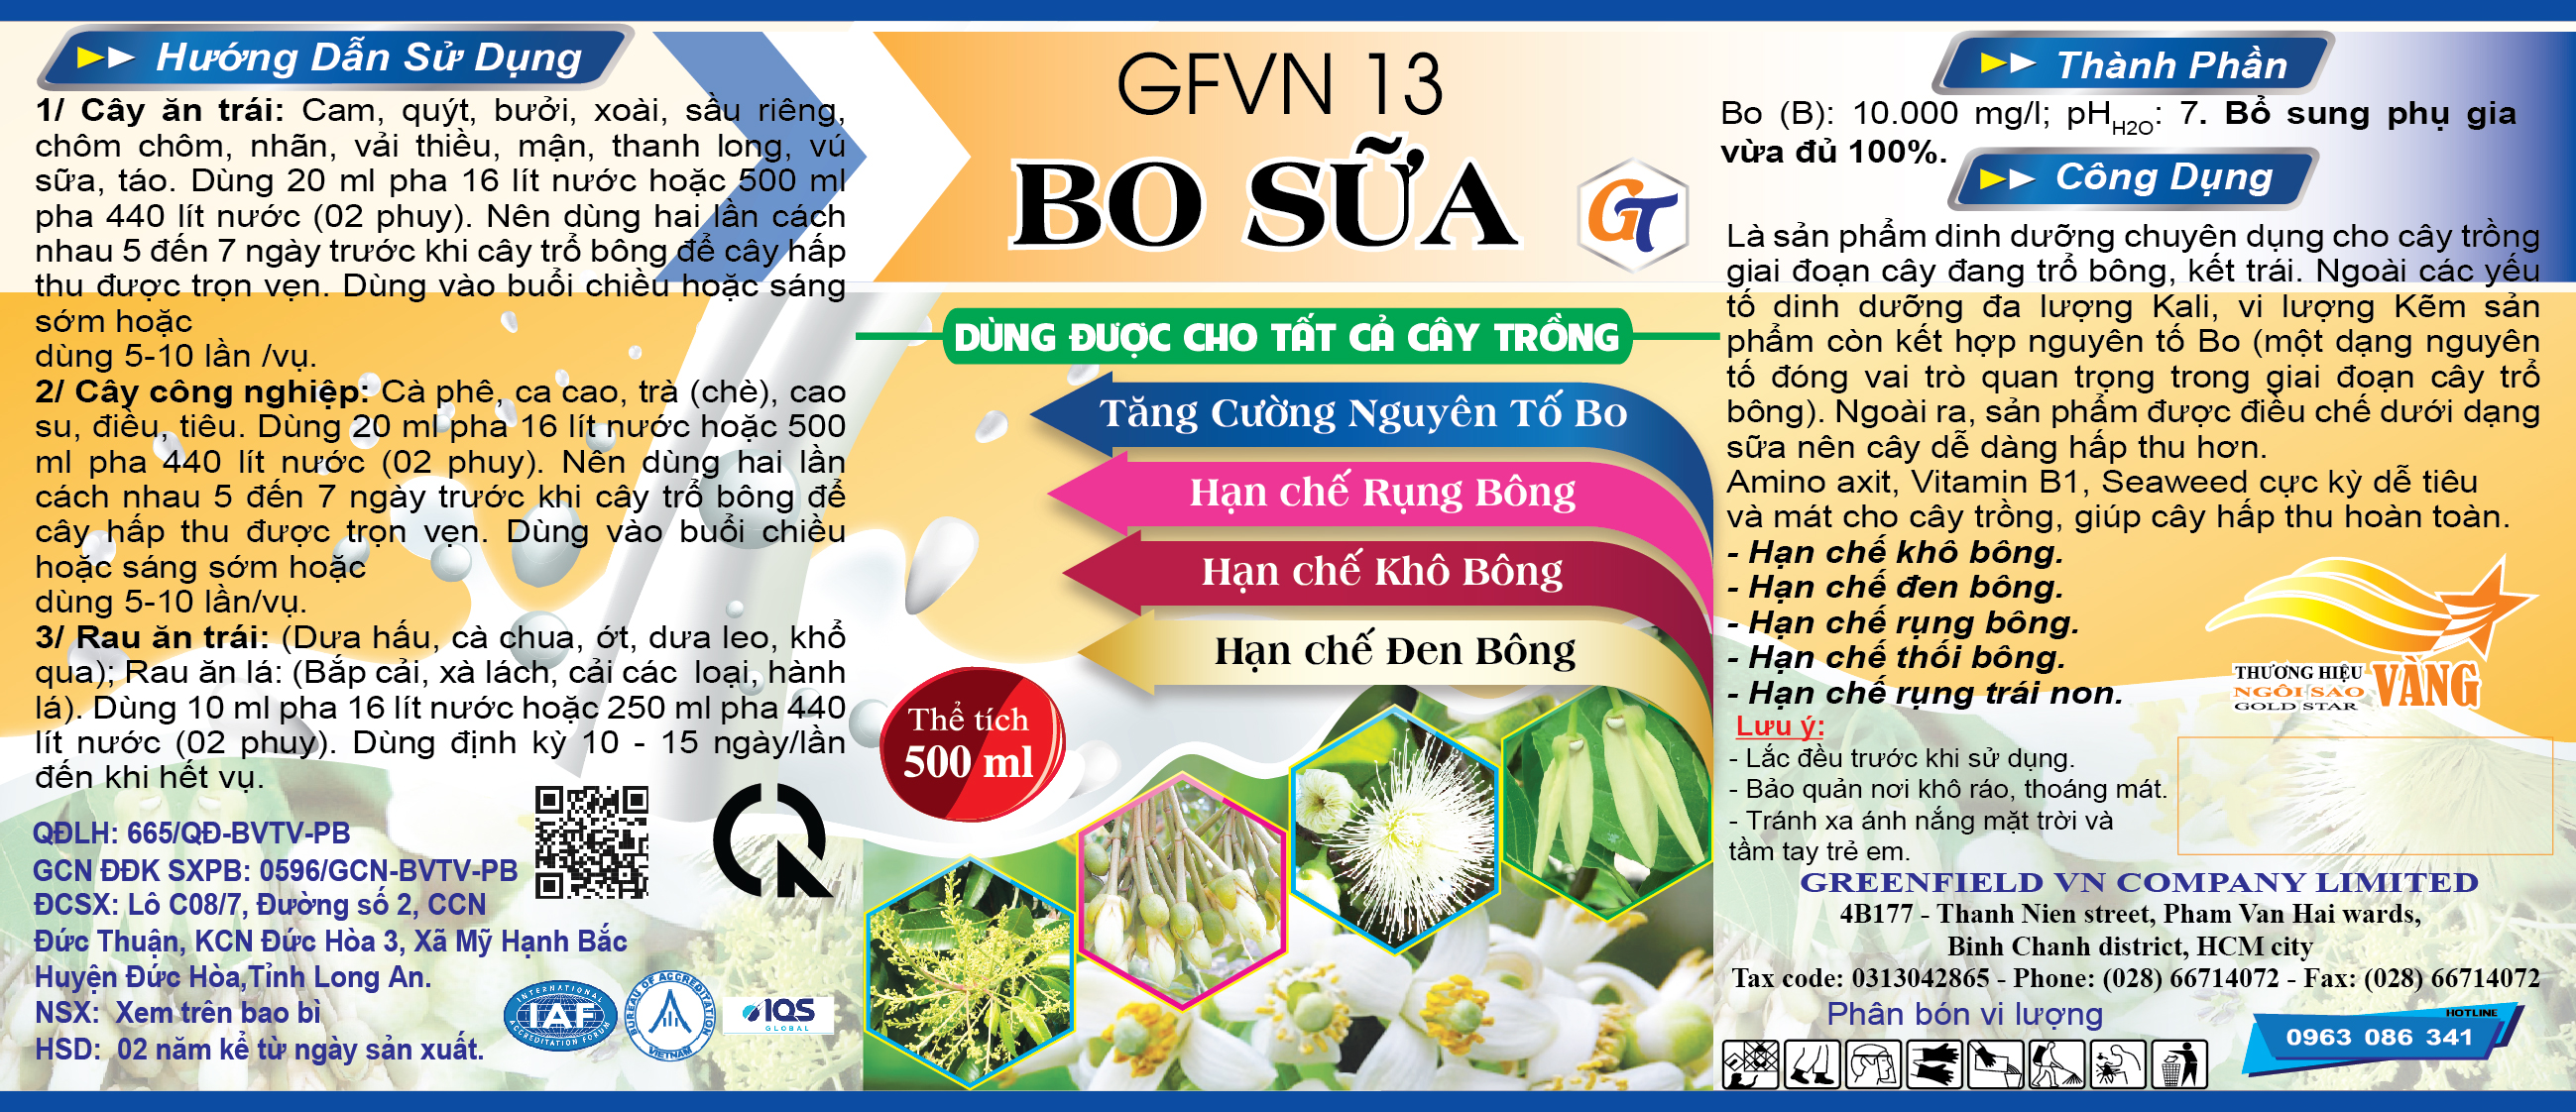 BO SỮA GT - GFVN 13